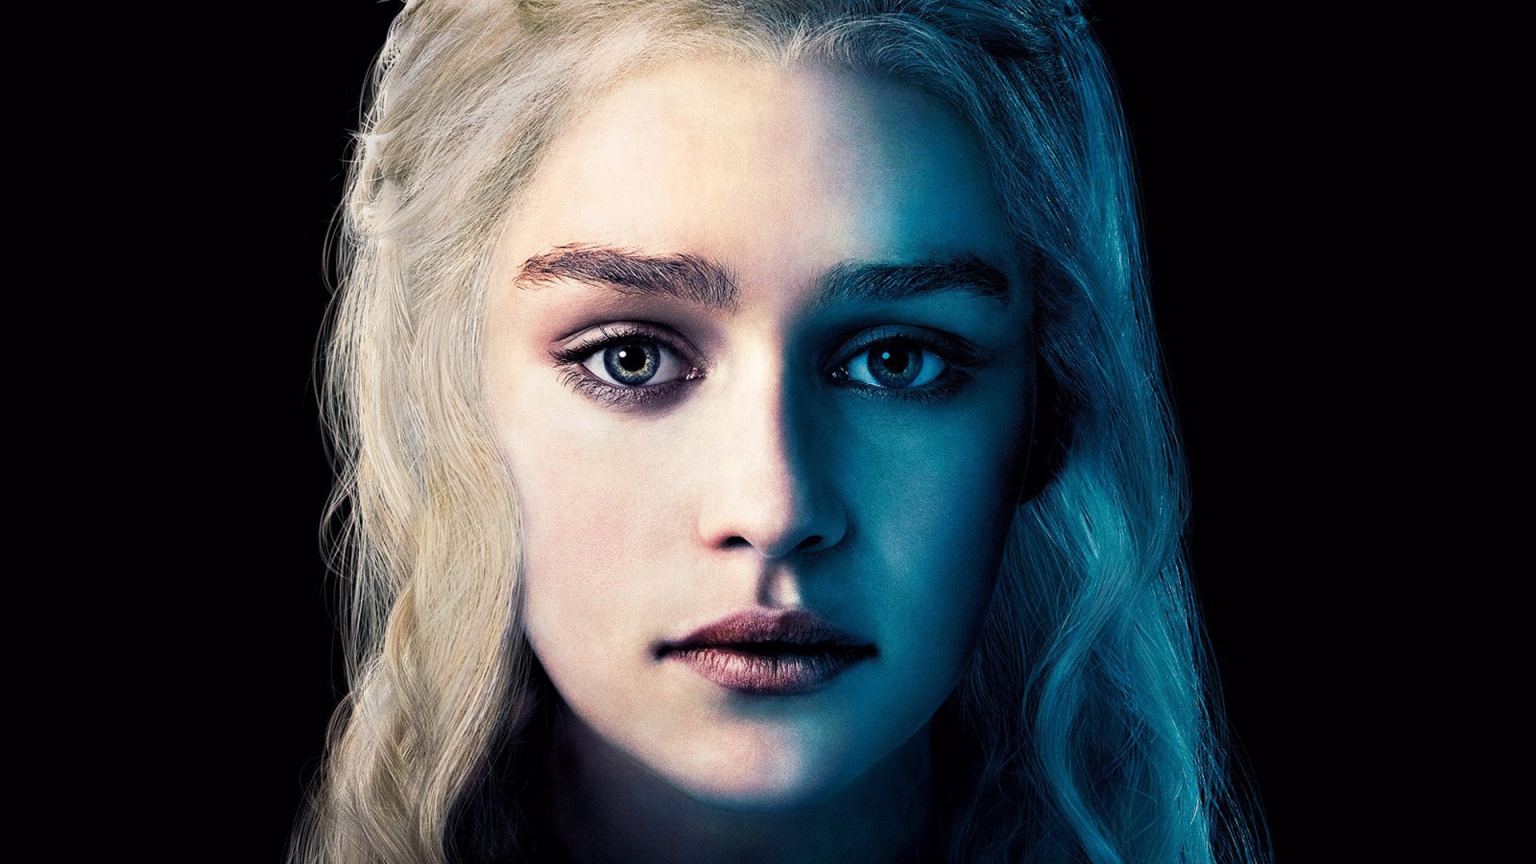 Daenerys Targaryen for 1536 x 864 HDTV resolution